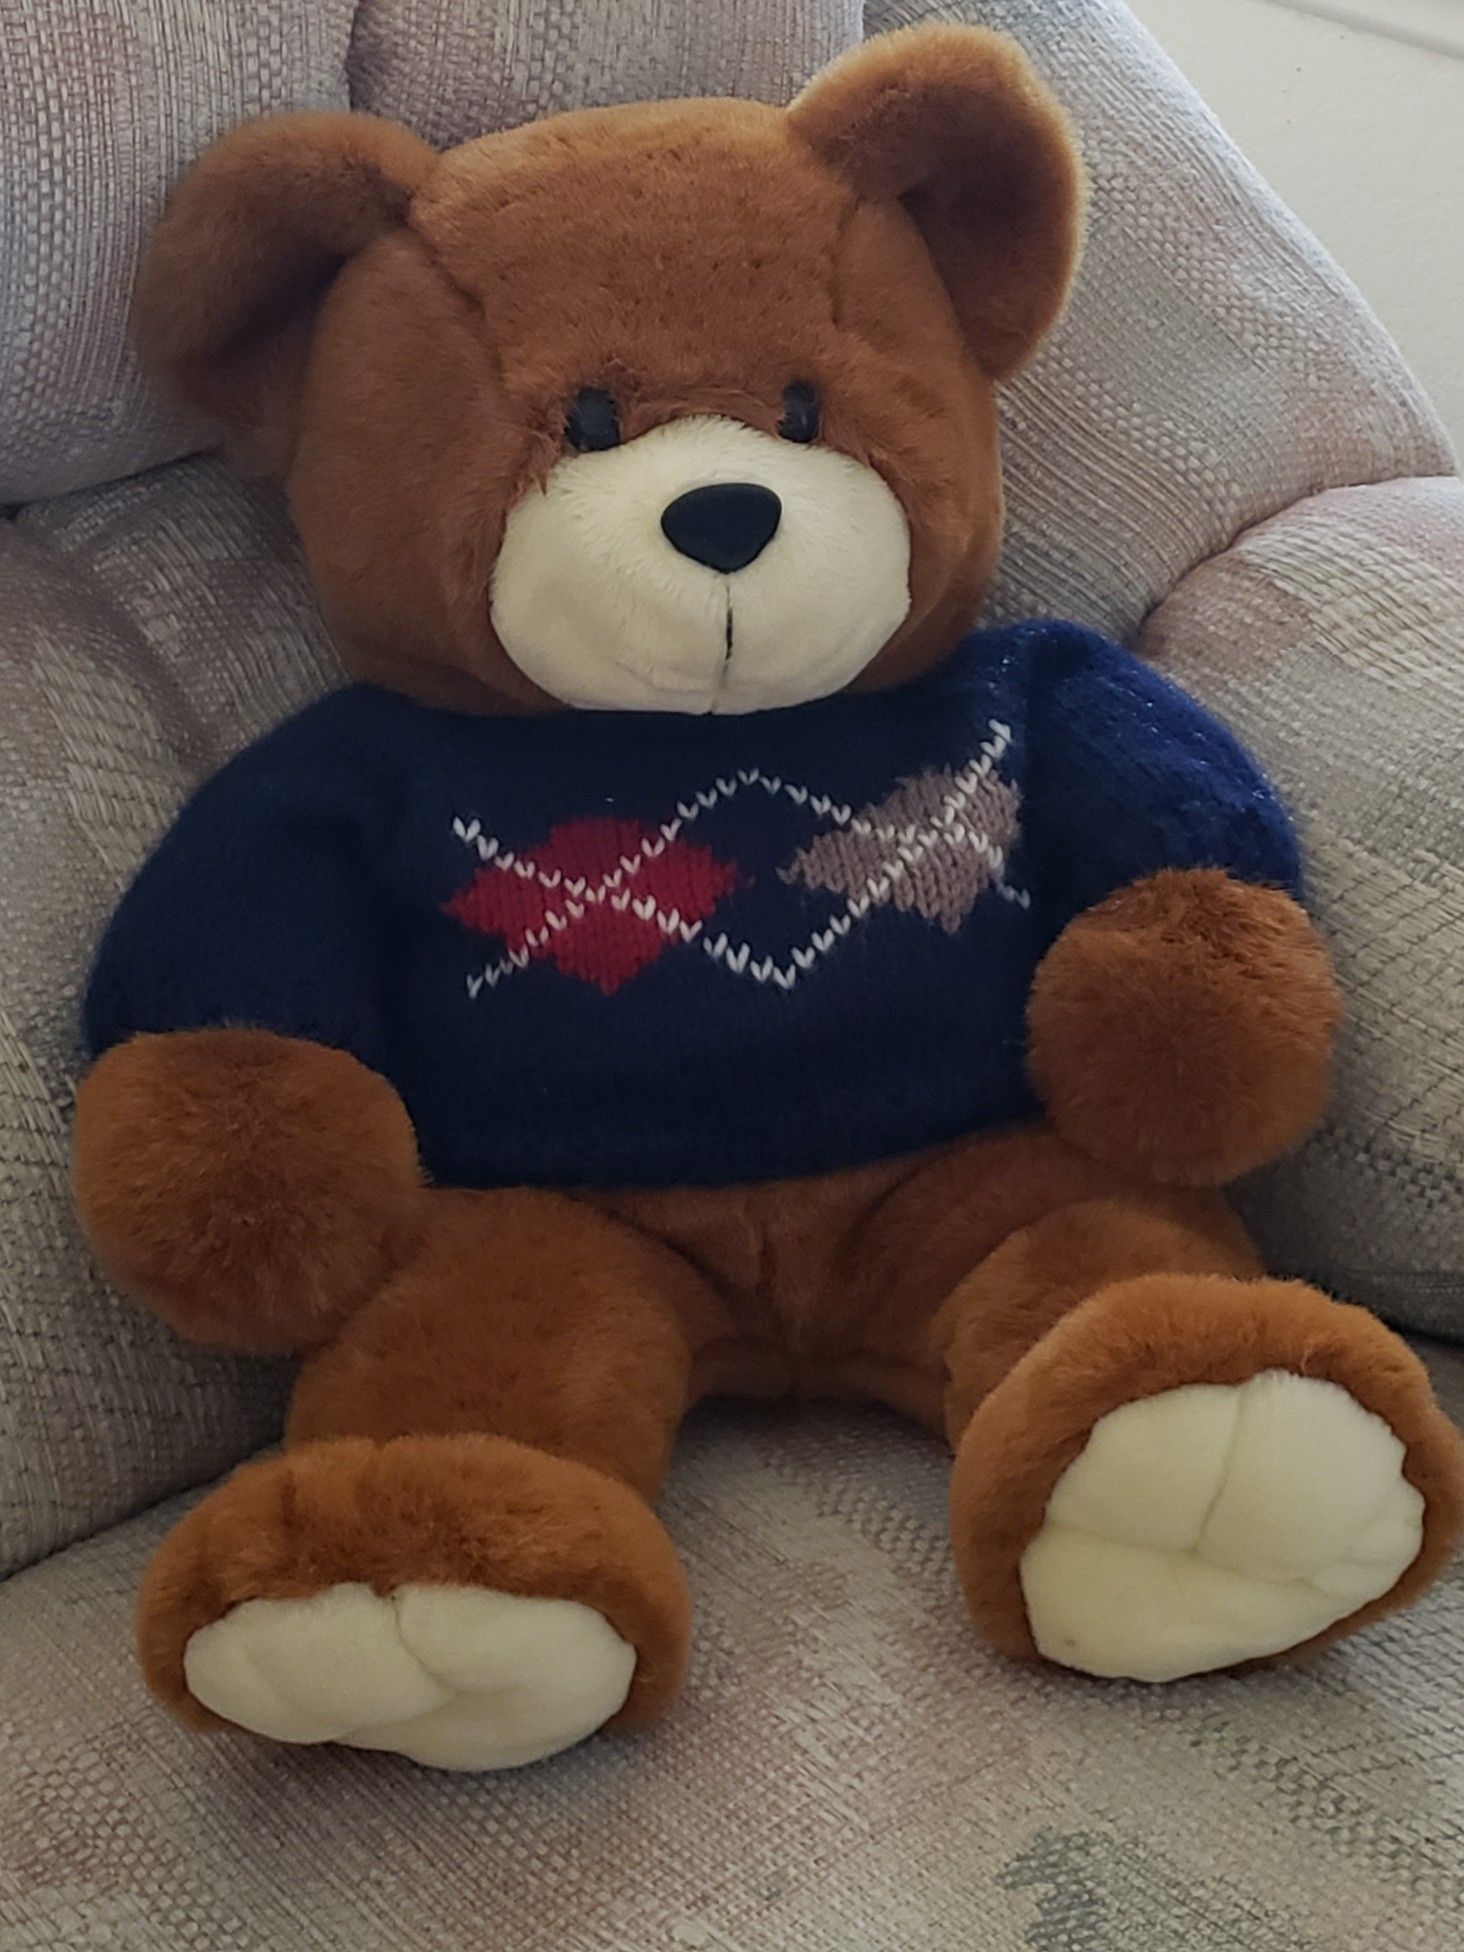 NEW - Super Soft Teddy Bear - 17" x 15"